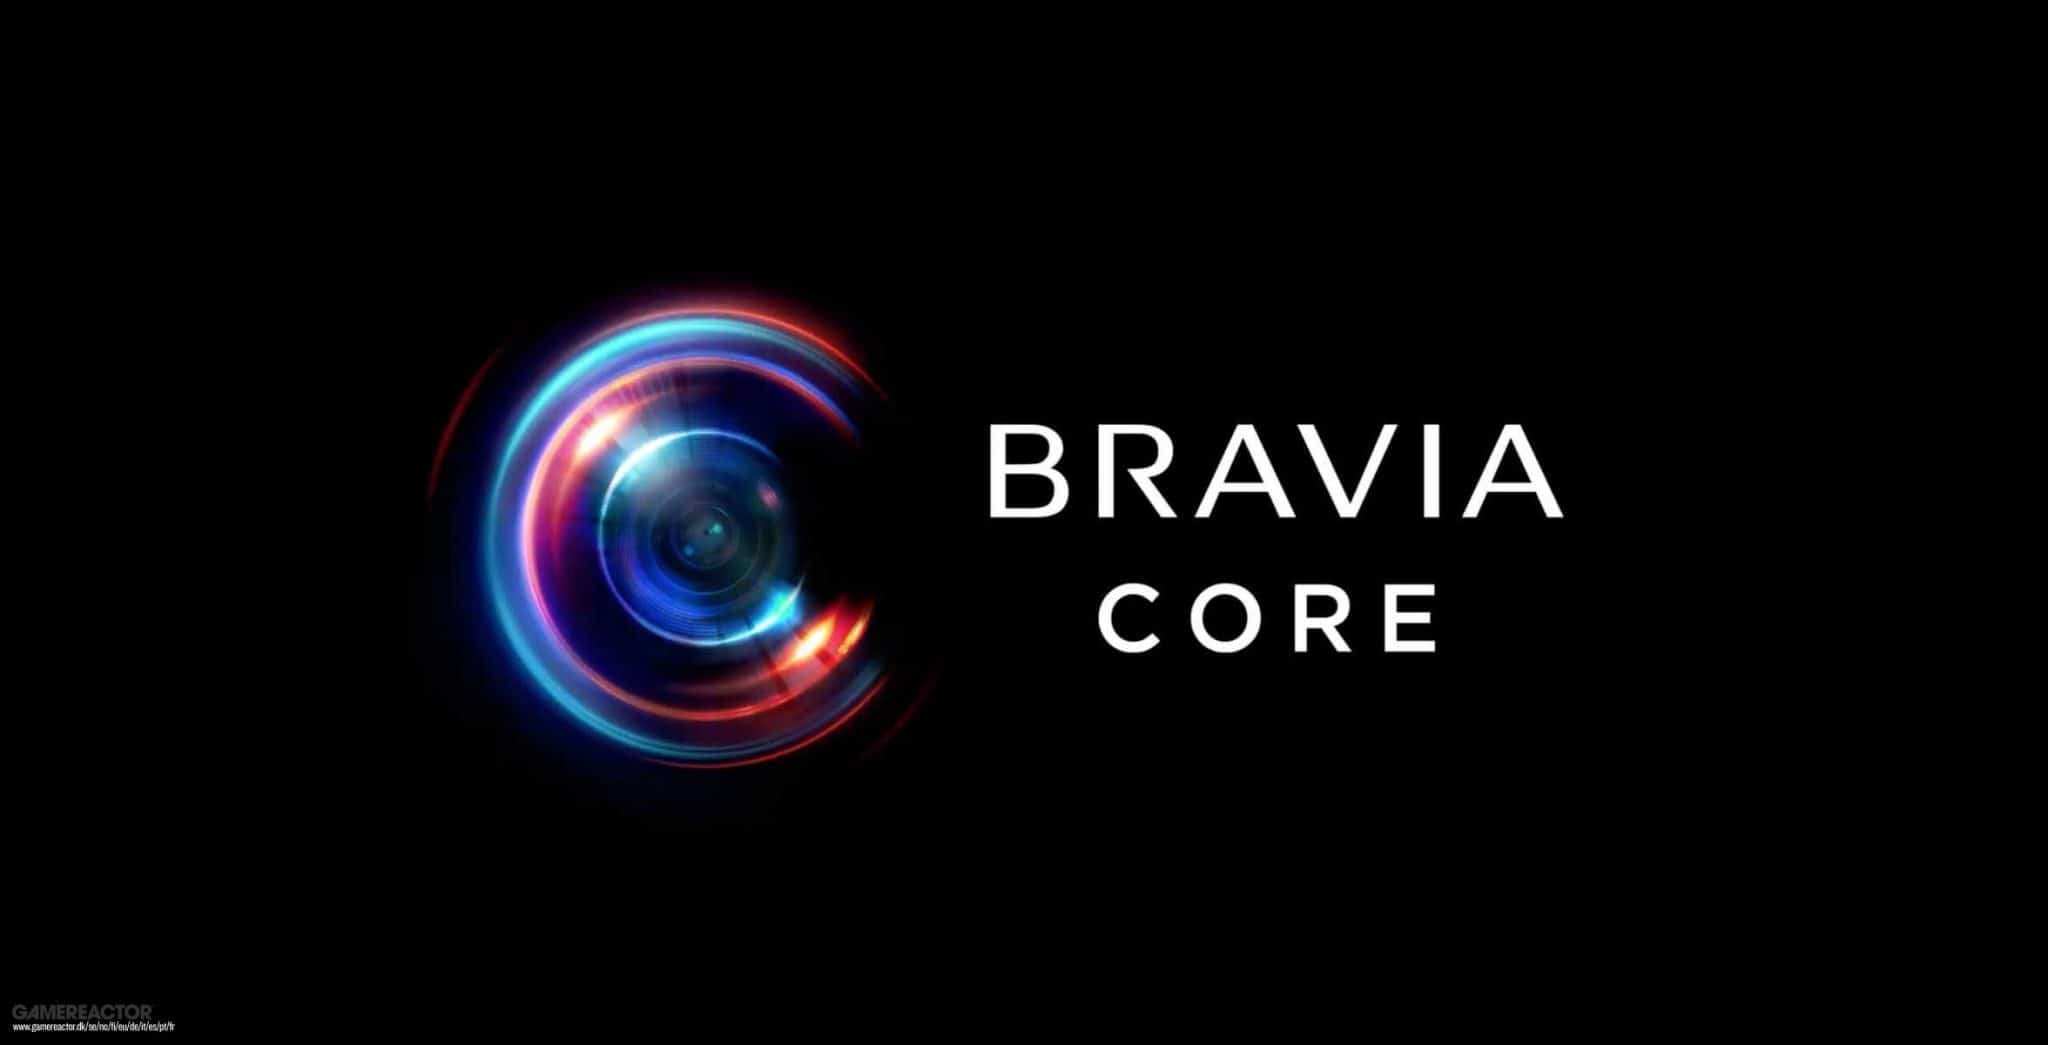 Bravia Core